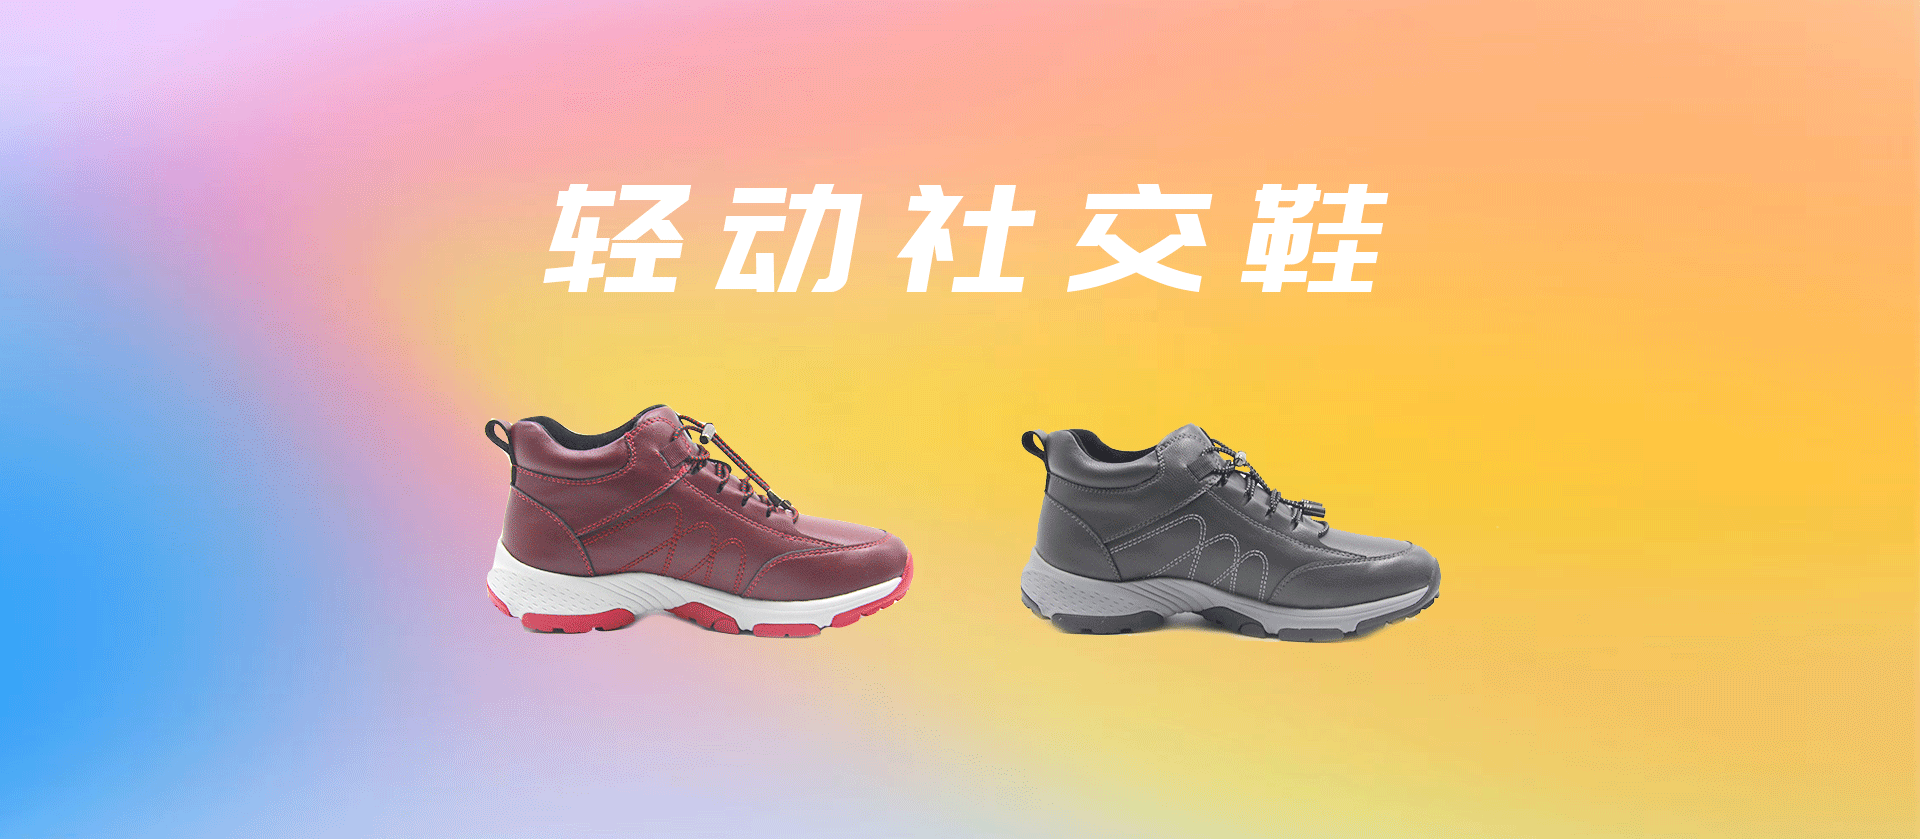 轻动鞋系列  /  轻动社交鞋